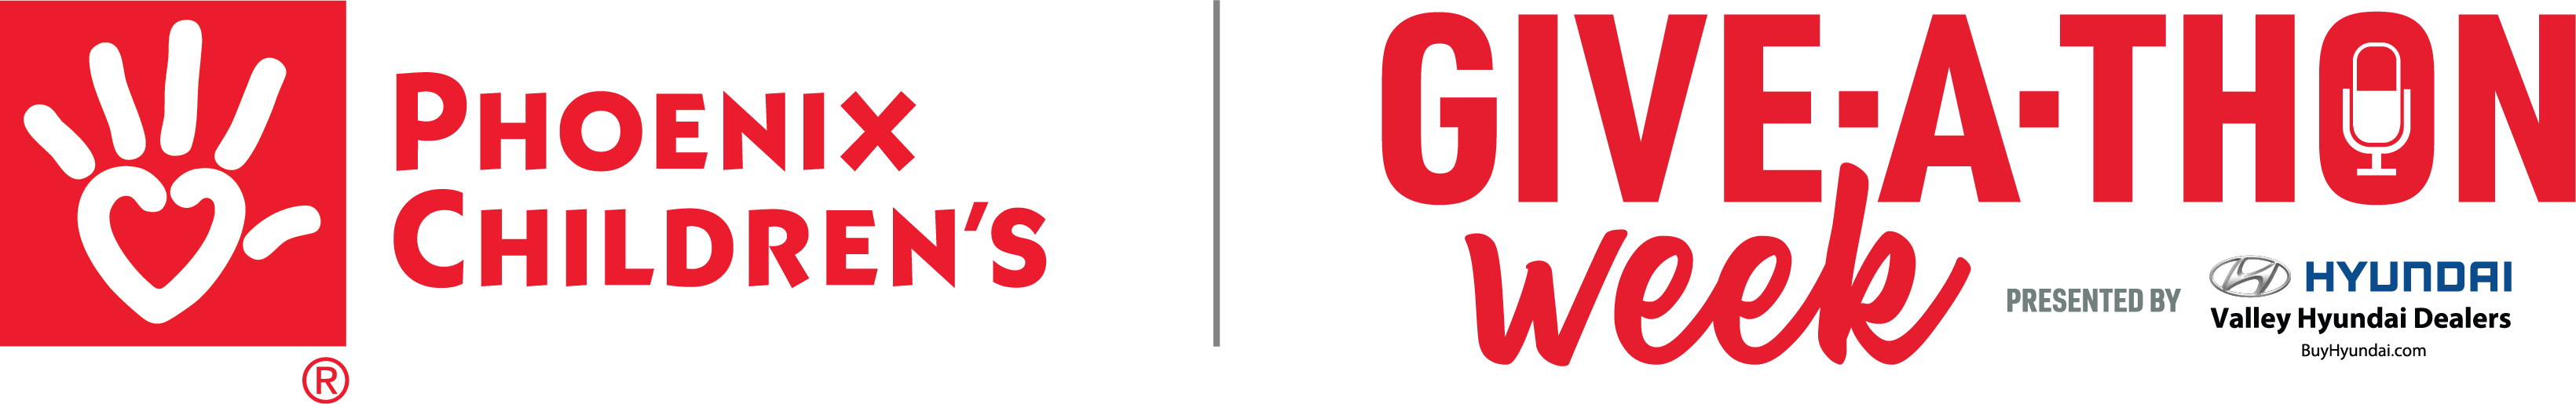 Give-A-Thon 2020 week logo